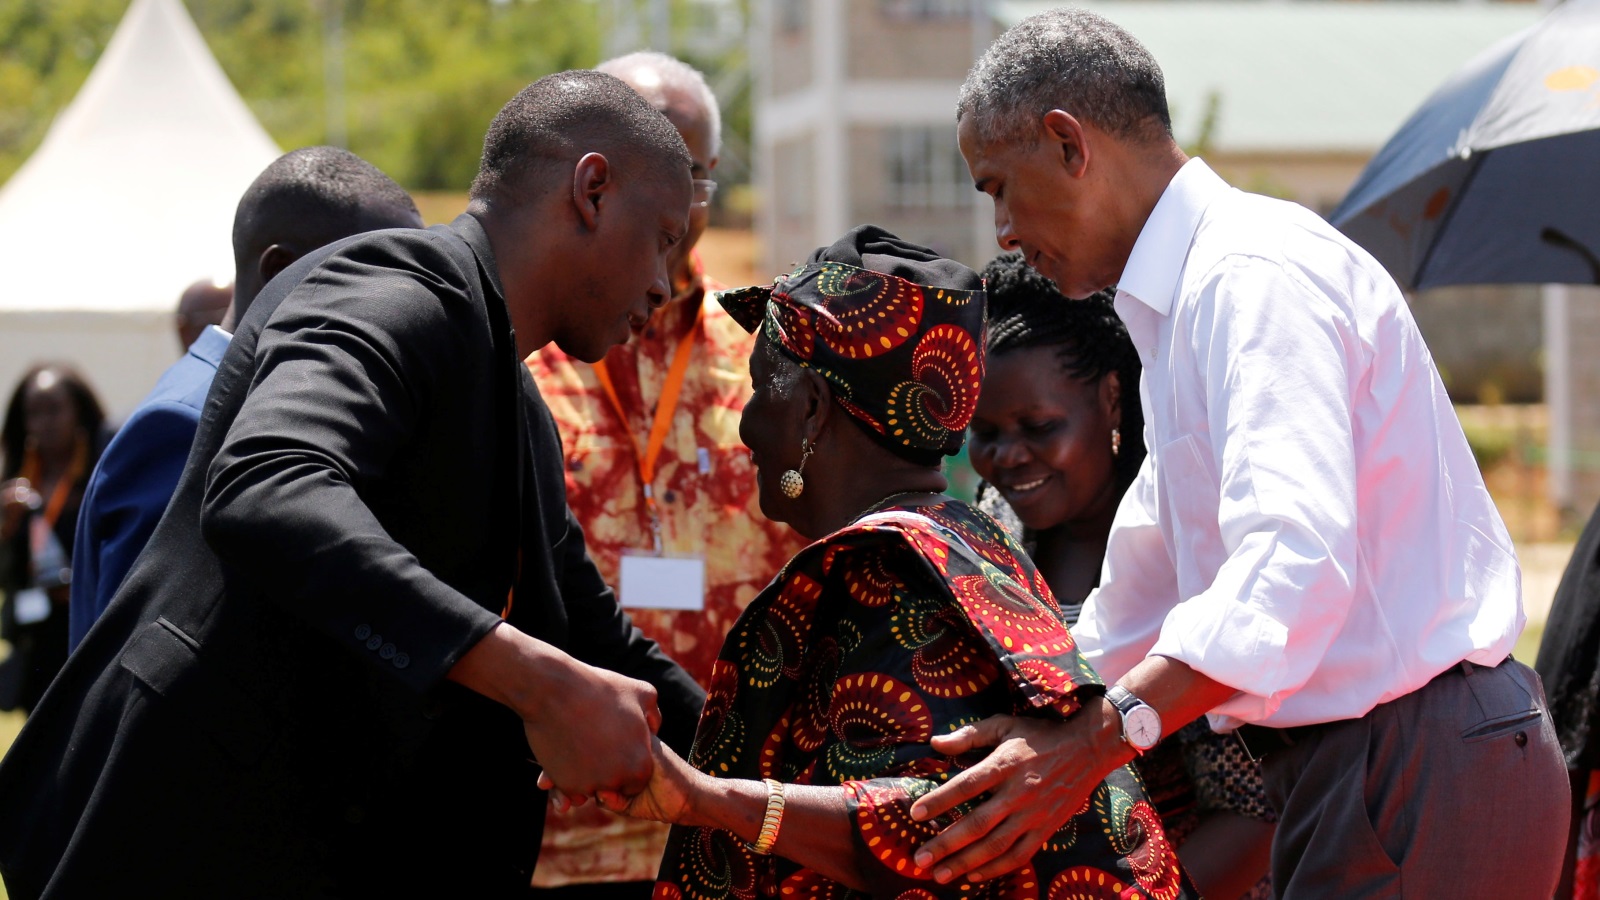 على وقع الموسيقي التقليدية باراك أوباما يرقص مع زوجة جده سارة أوباما (رويترز)